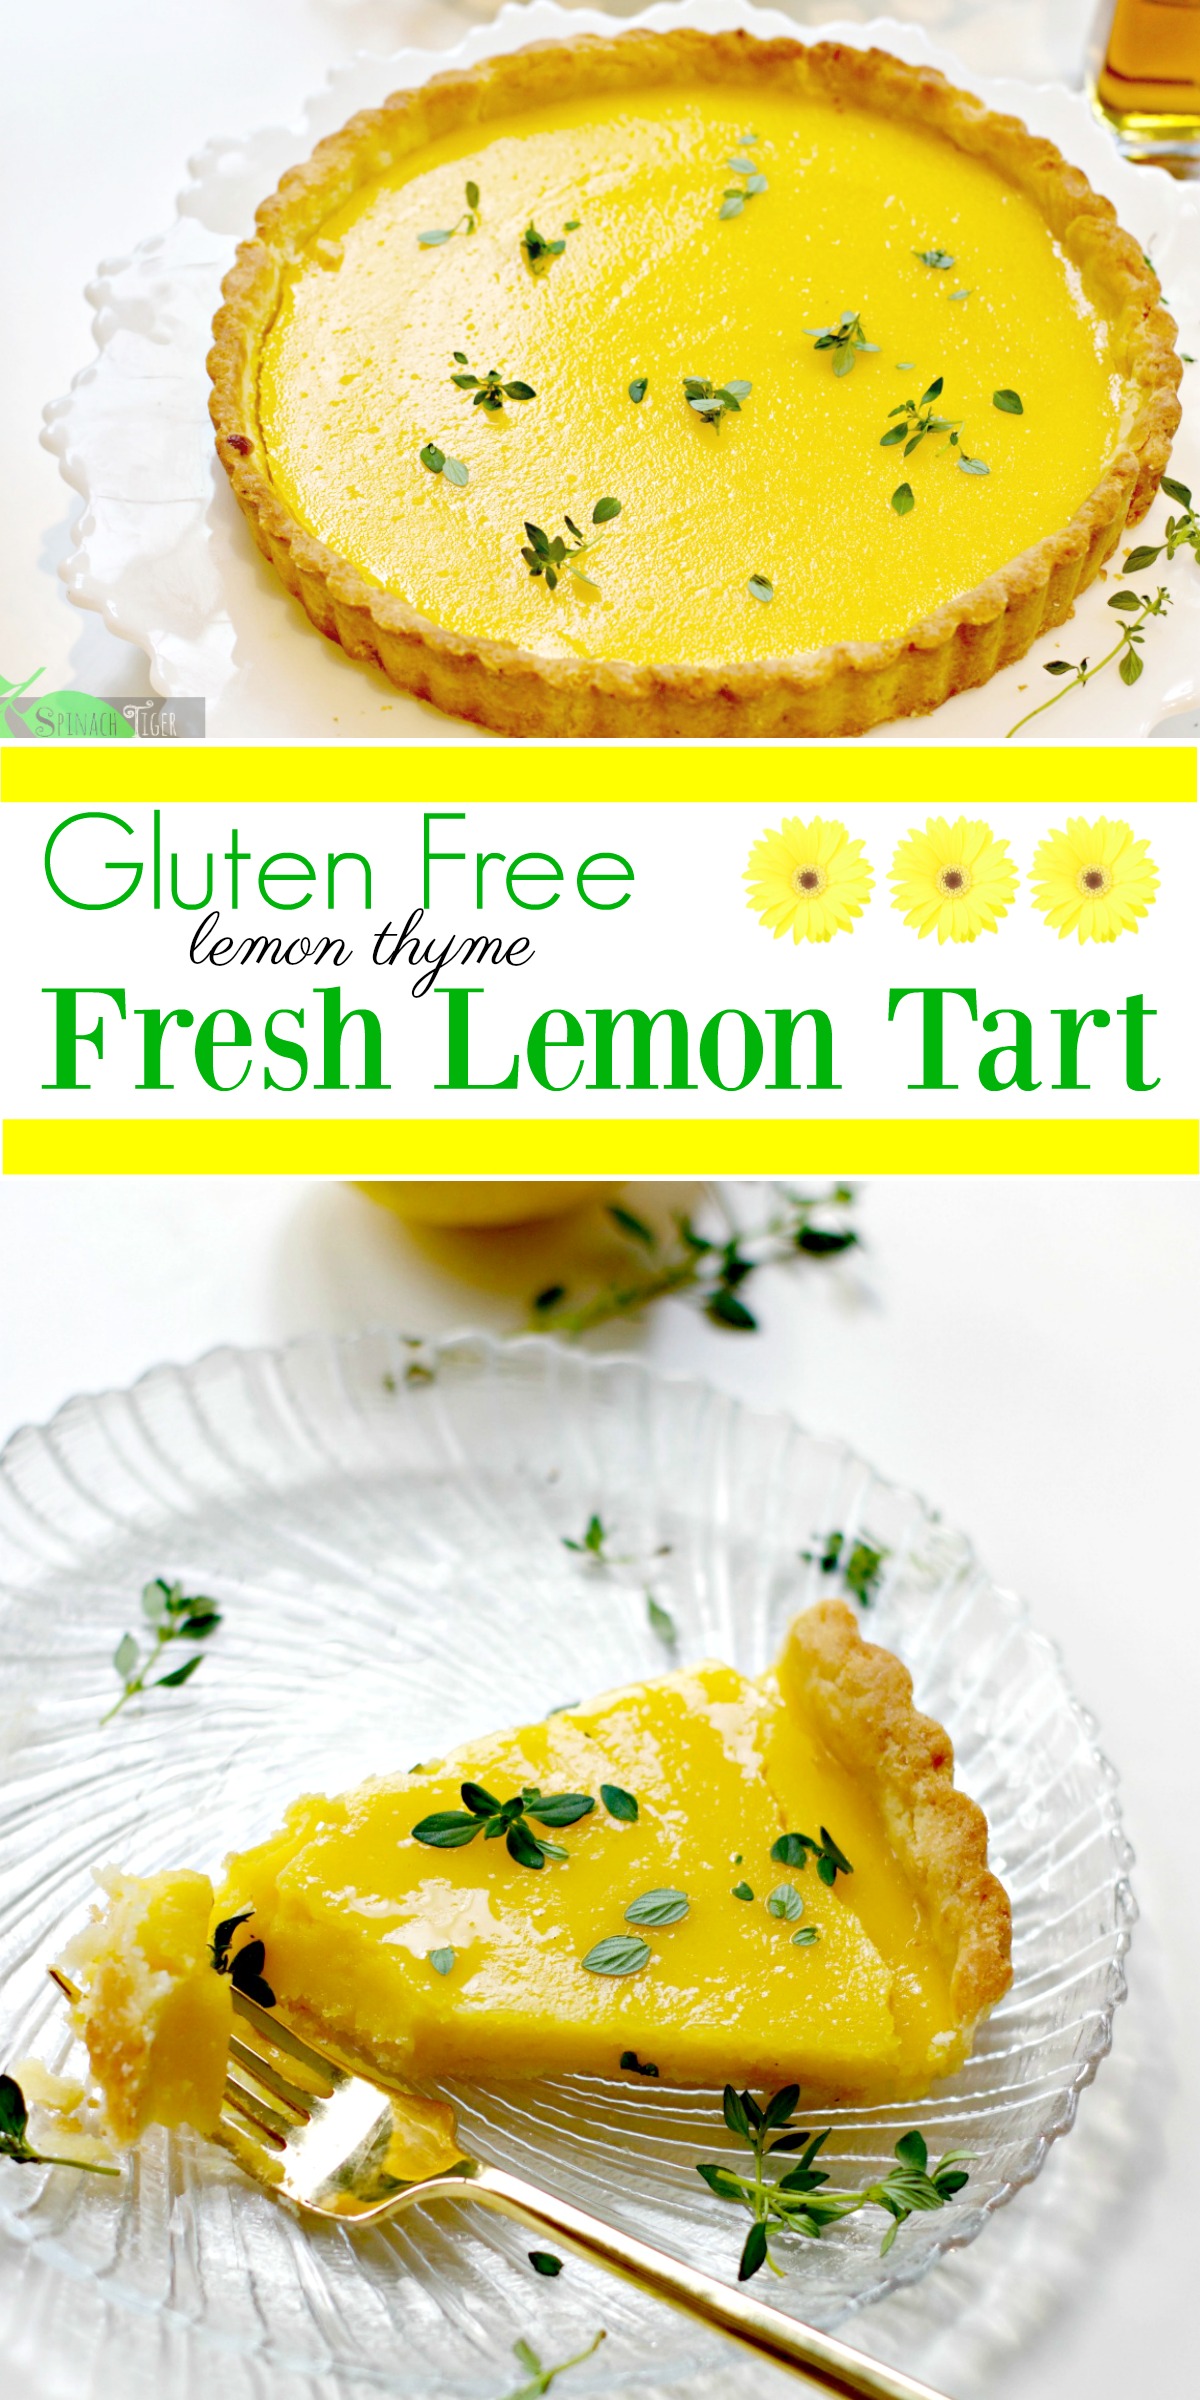 Lemon Curd Tart Recipe, Gluten Free from Spinach TIger